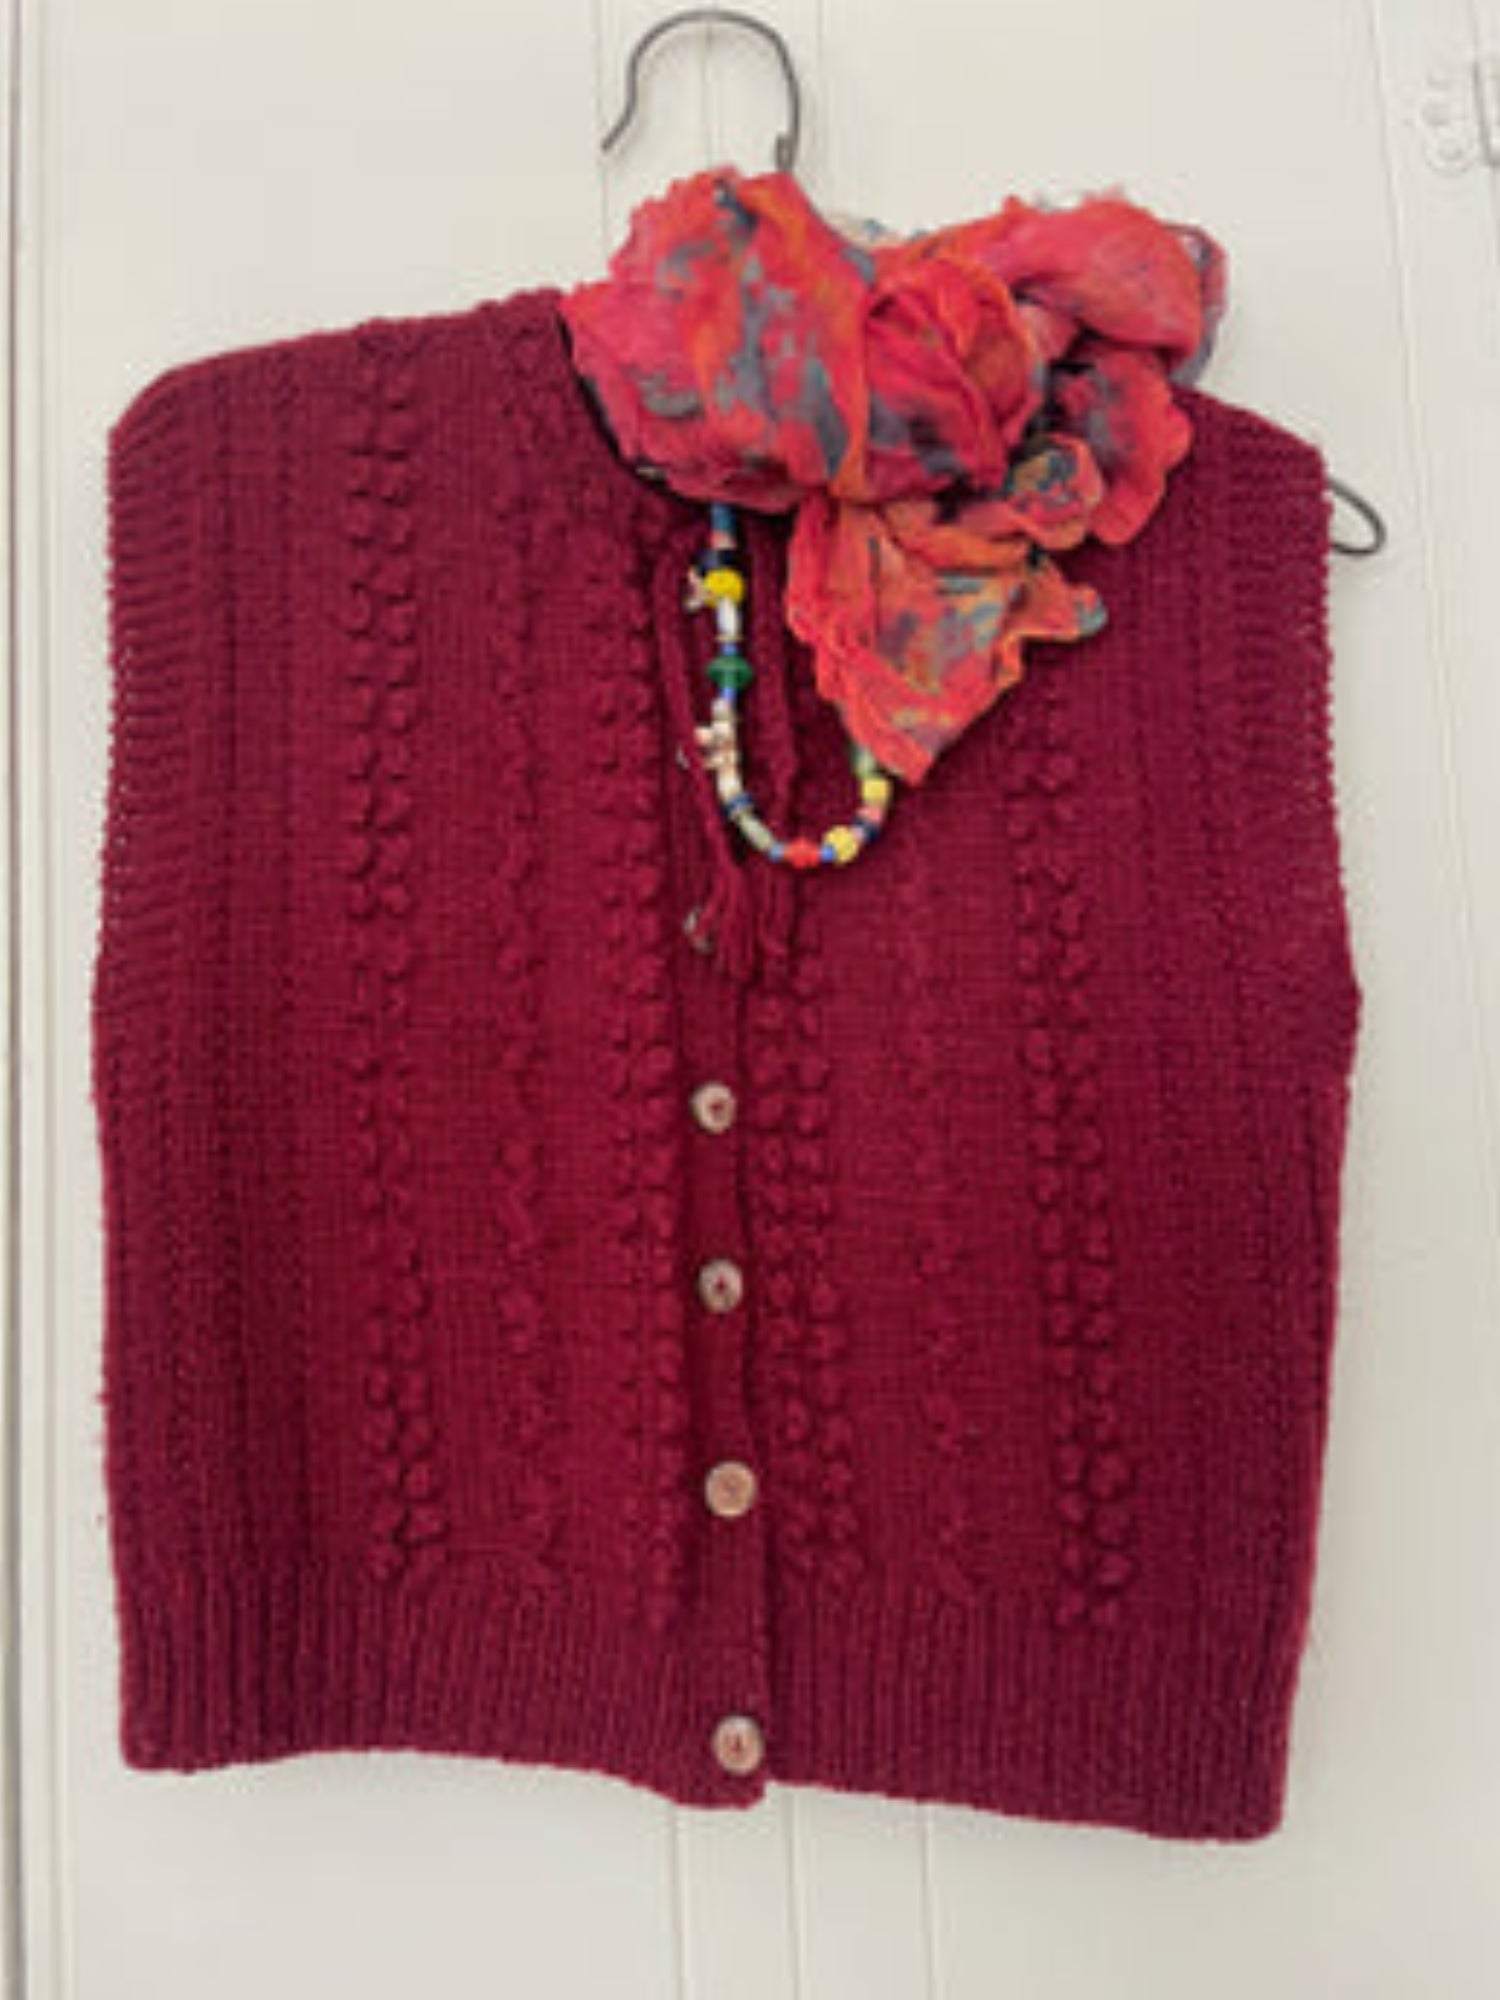 Rosie's burgundy sweater vest